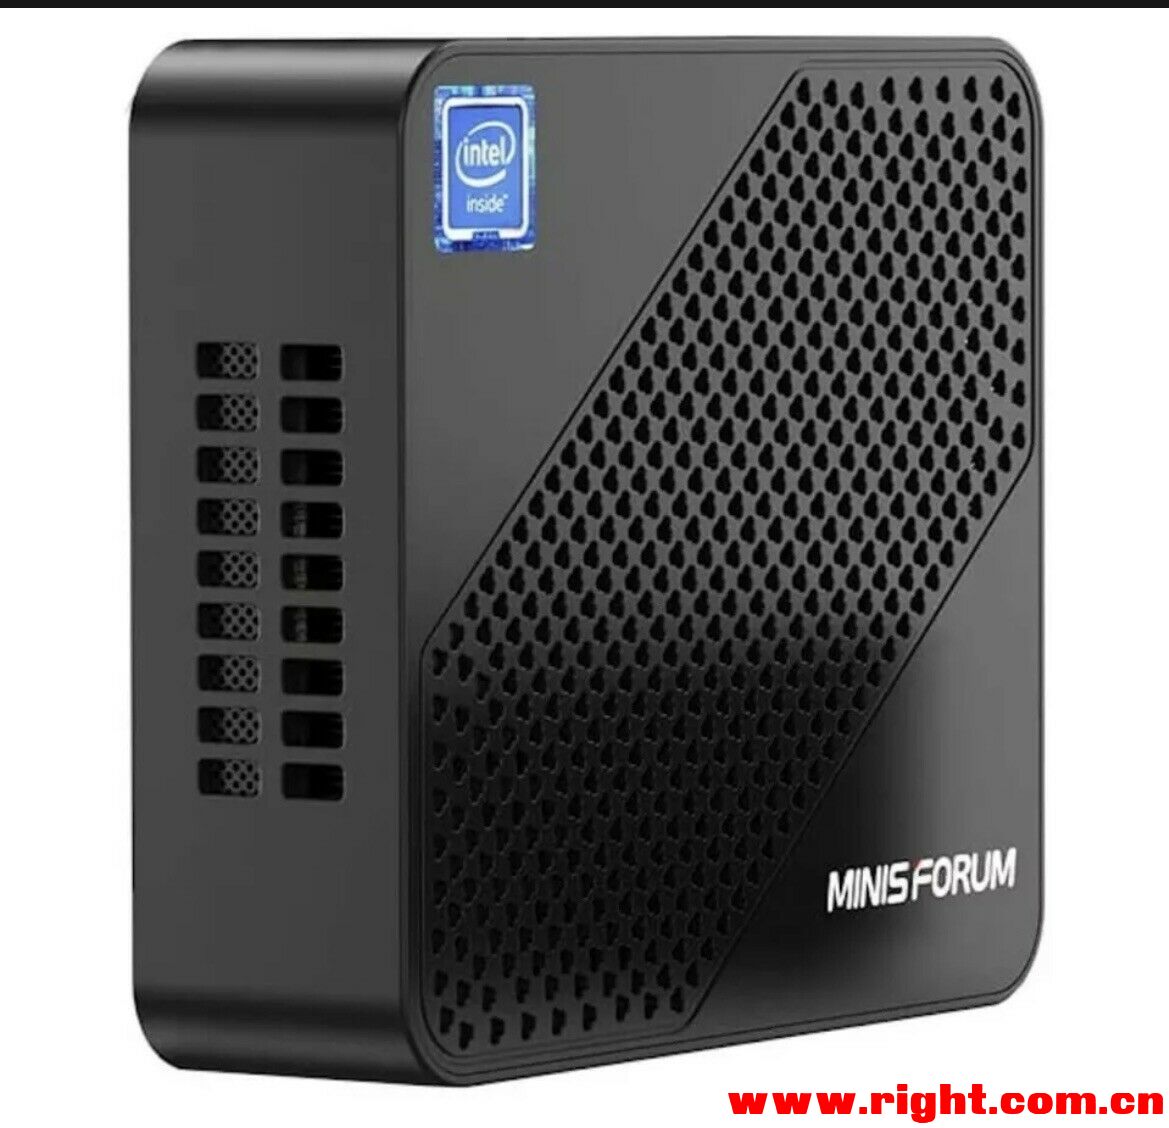 求购Minisforum U700 Intel Core i5-5257U/8GB/128GB - Mini PC-物品转让或求购-恩山无线论坛-  手机版- Powered by Discuz!